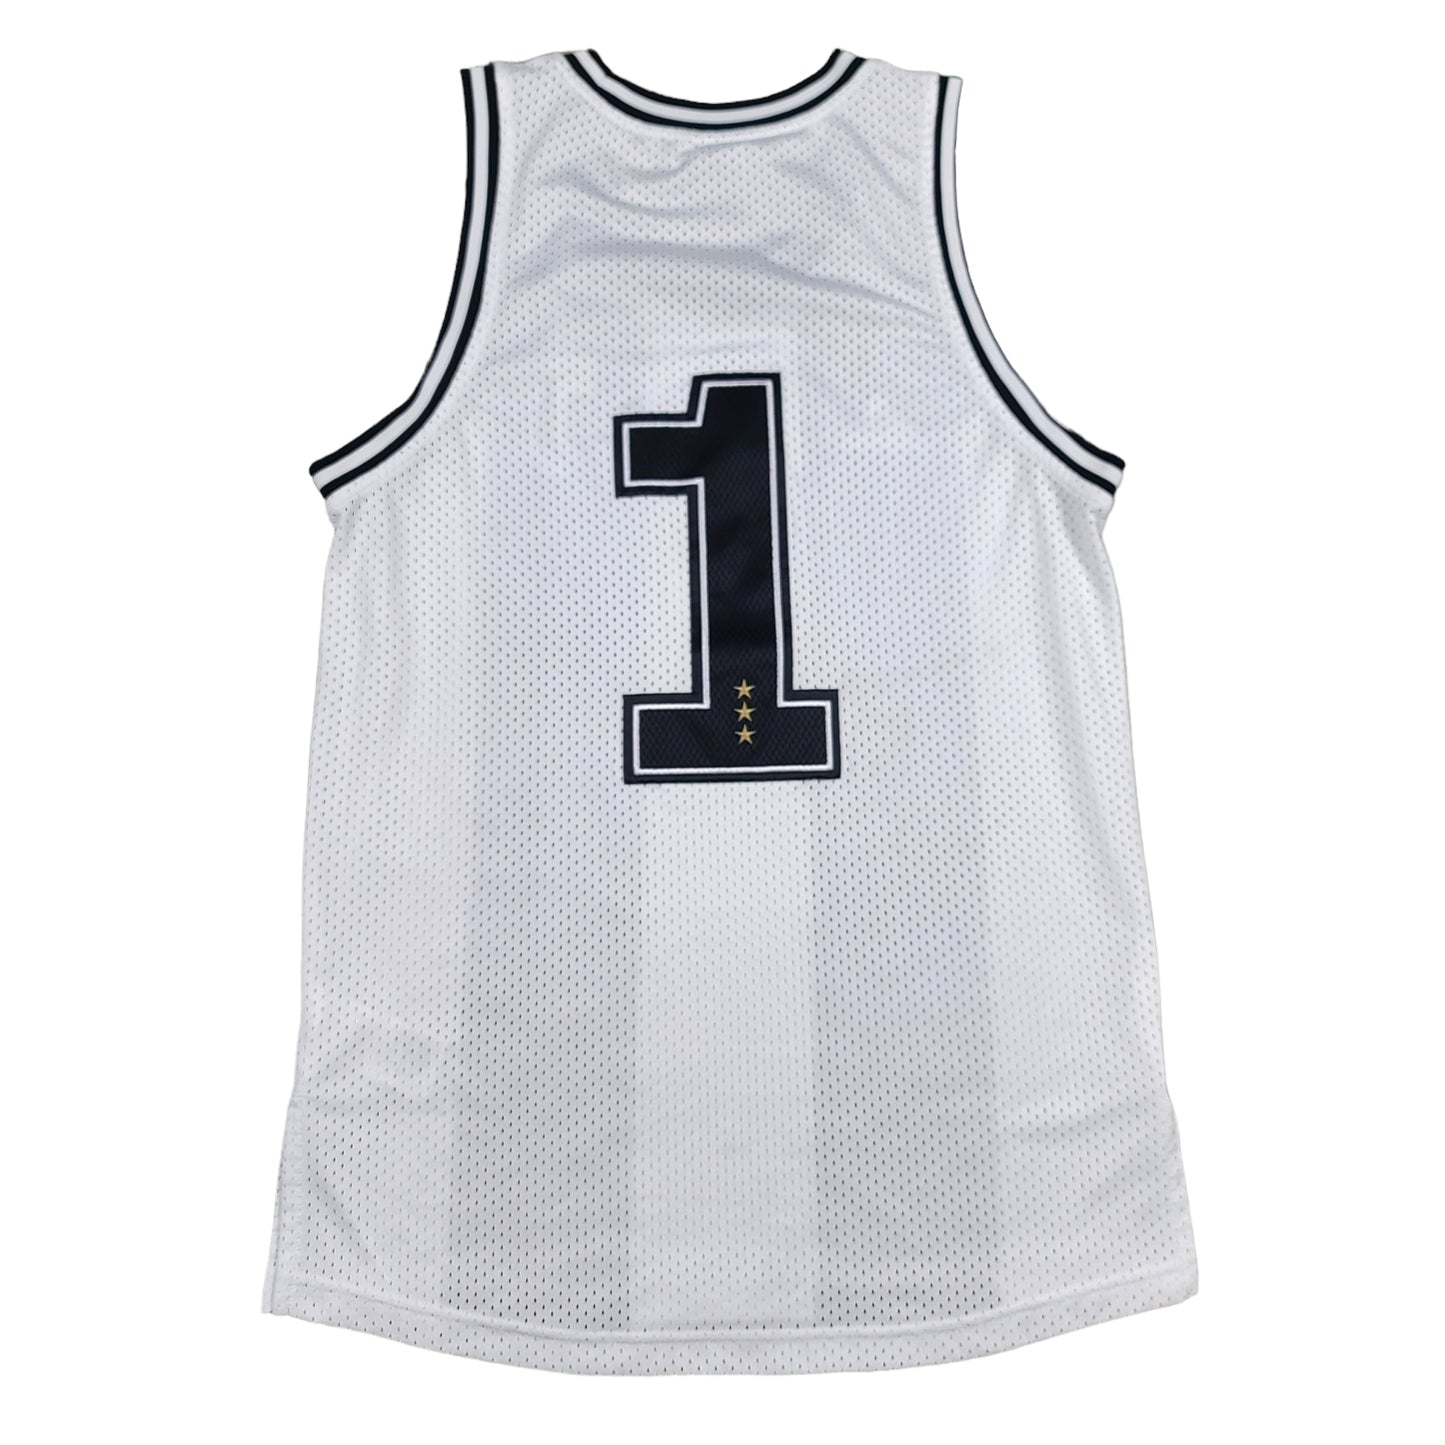 Juventus adidas Basketball Jersey